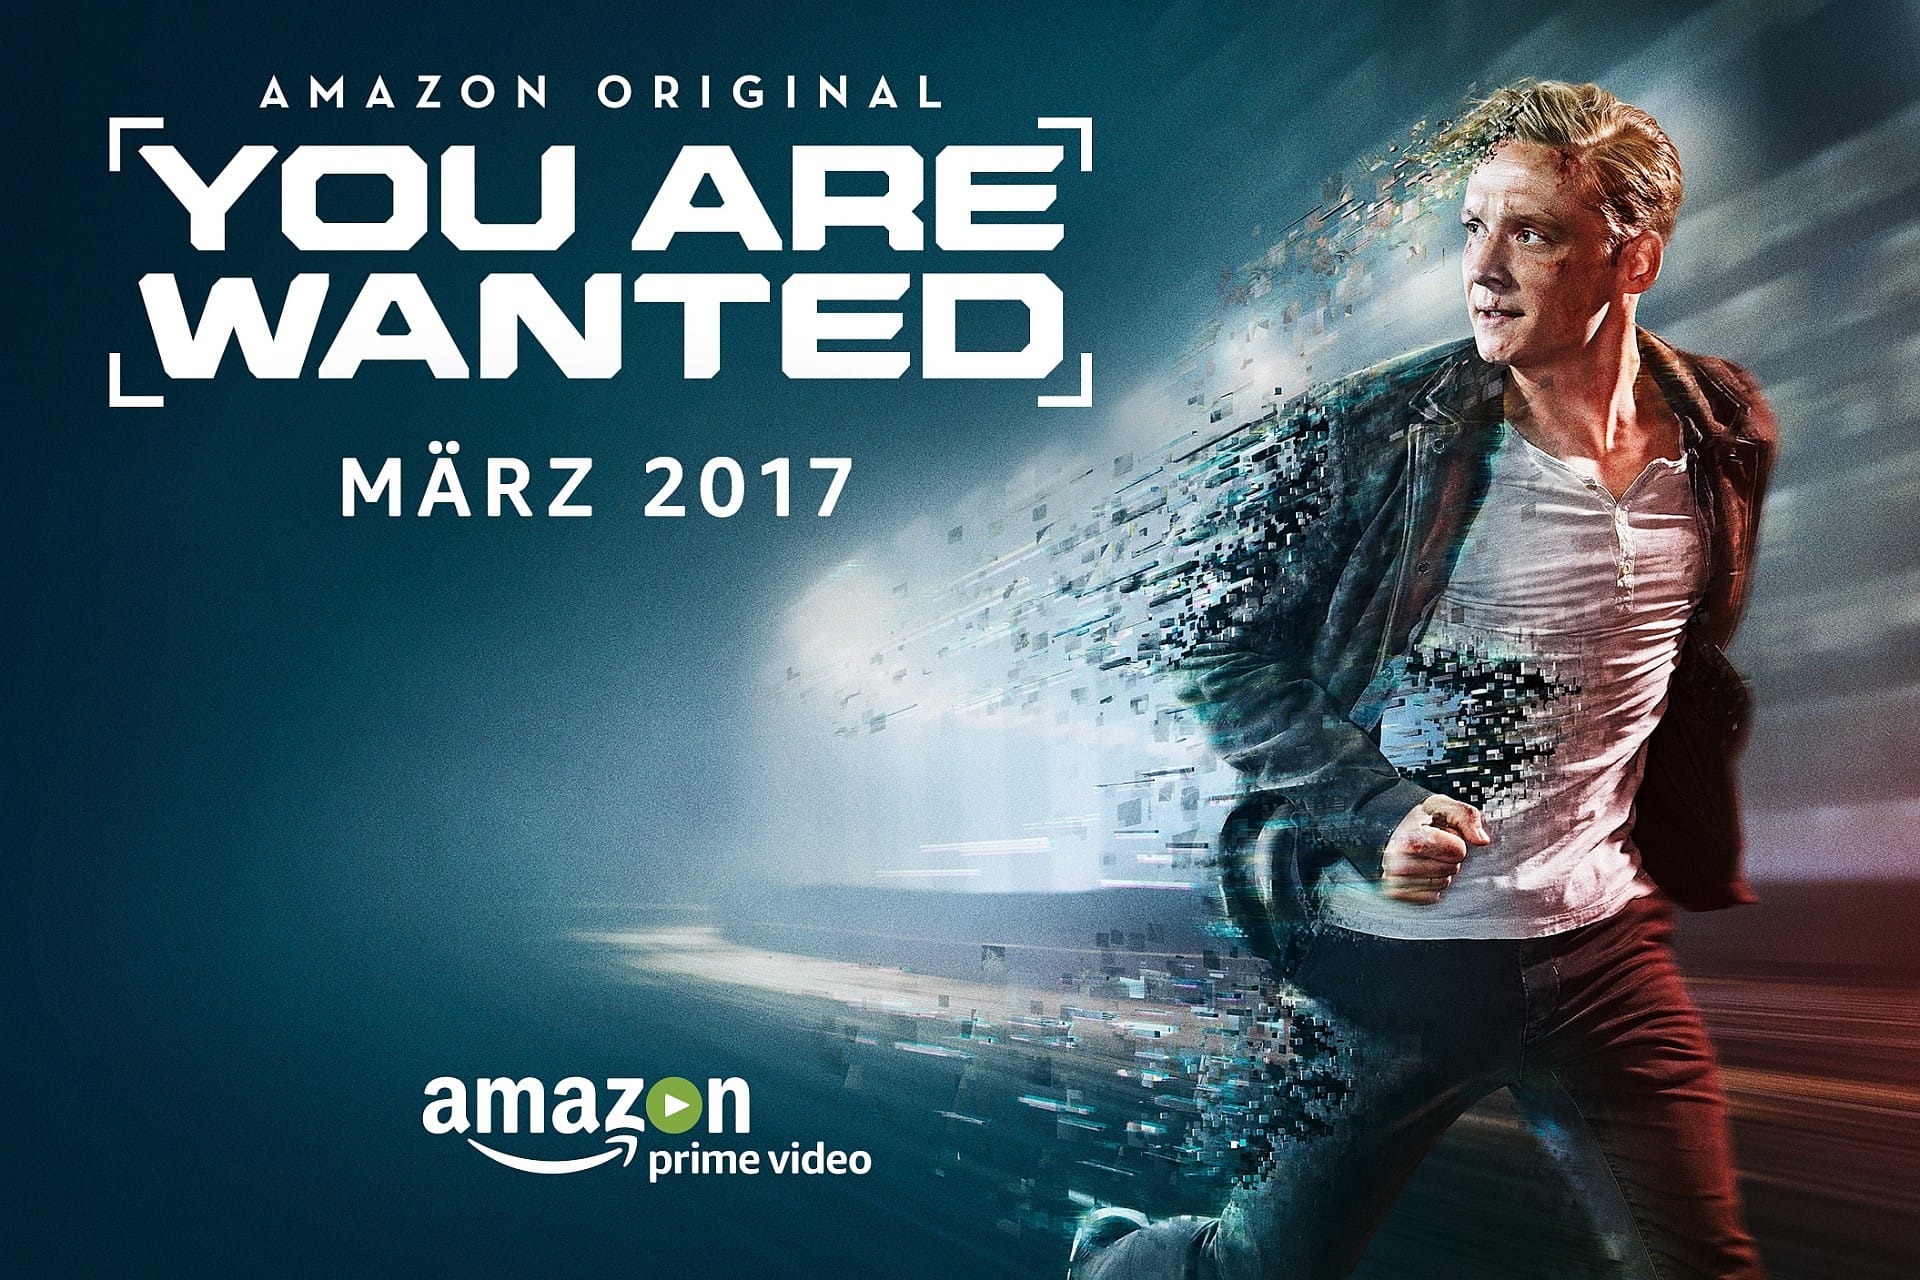 Schweighöfer spielt in der Amazon-Serie den Hotelmanager Lukas Franke. Dessen Leben stellt sich auf den Kopf, als ein Hacker seine persönlichen Daten stiehlt und damit seine digitale Identität verändert.